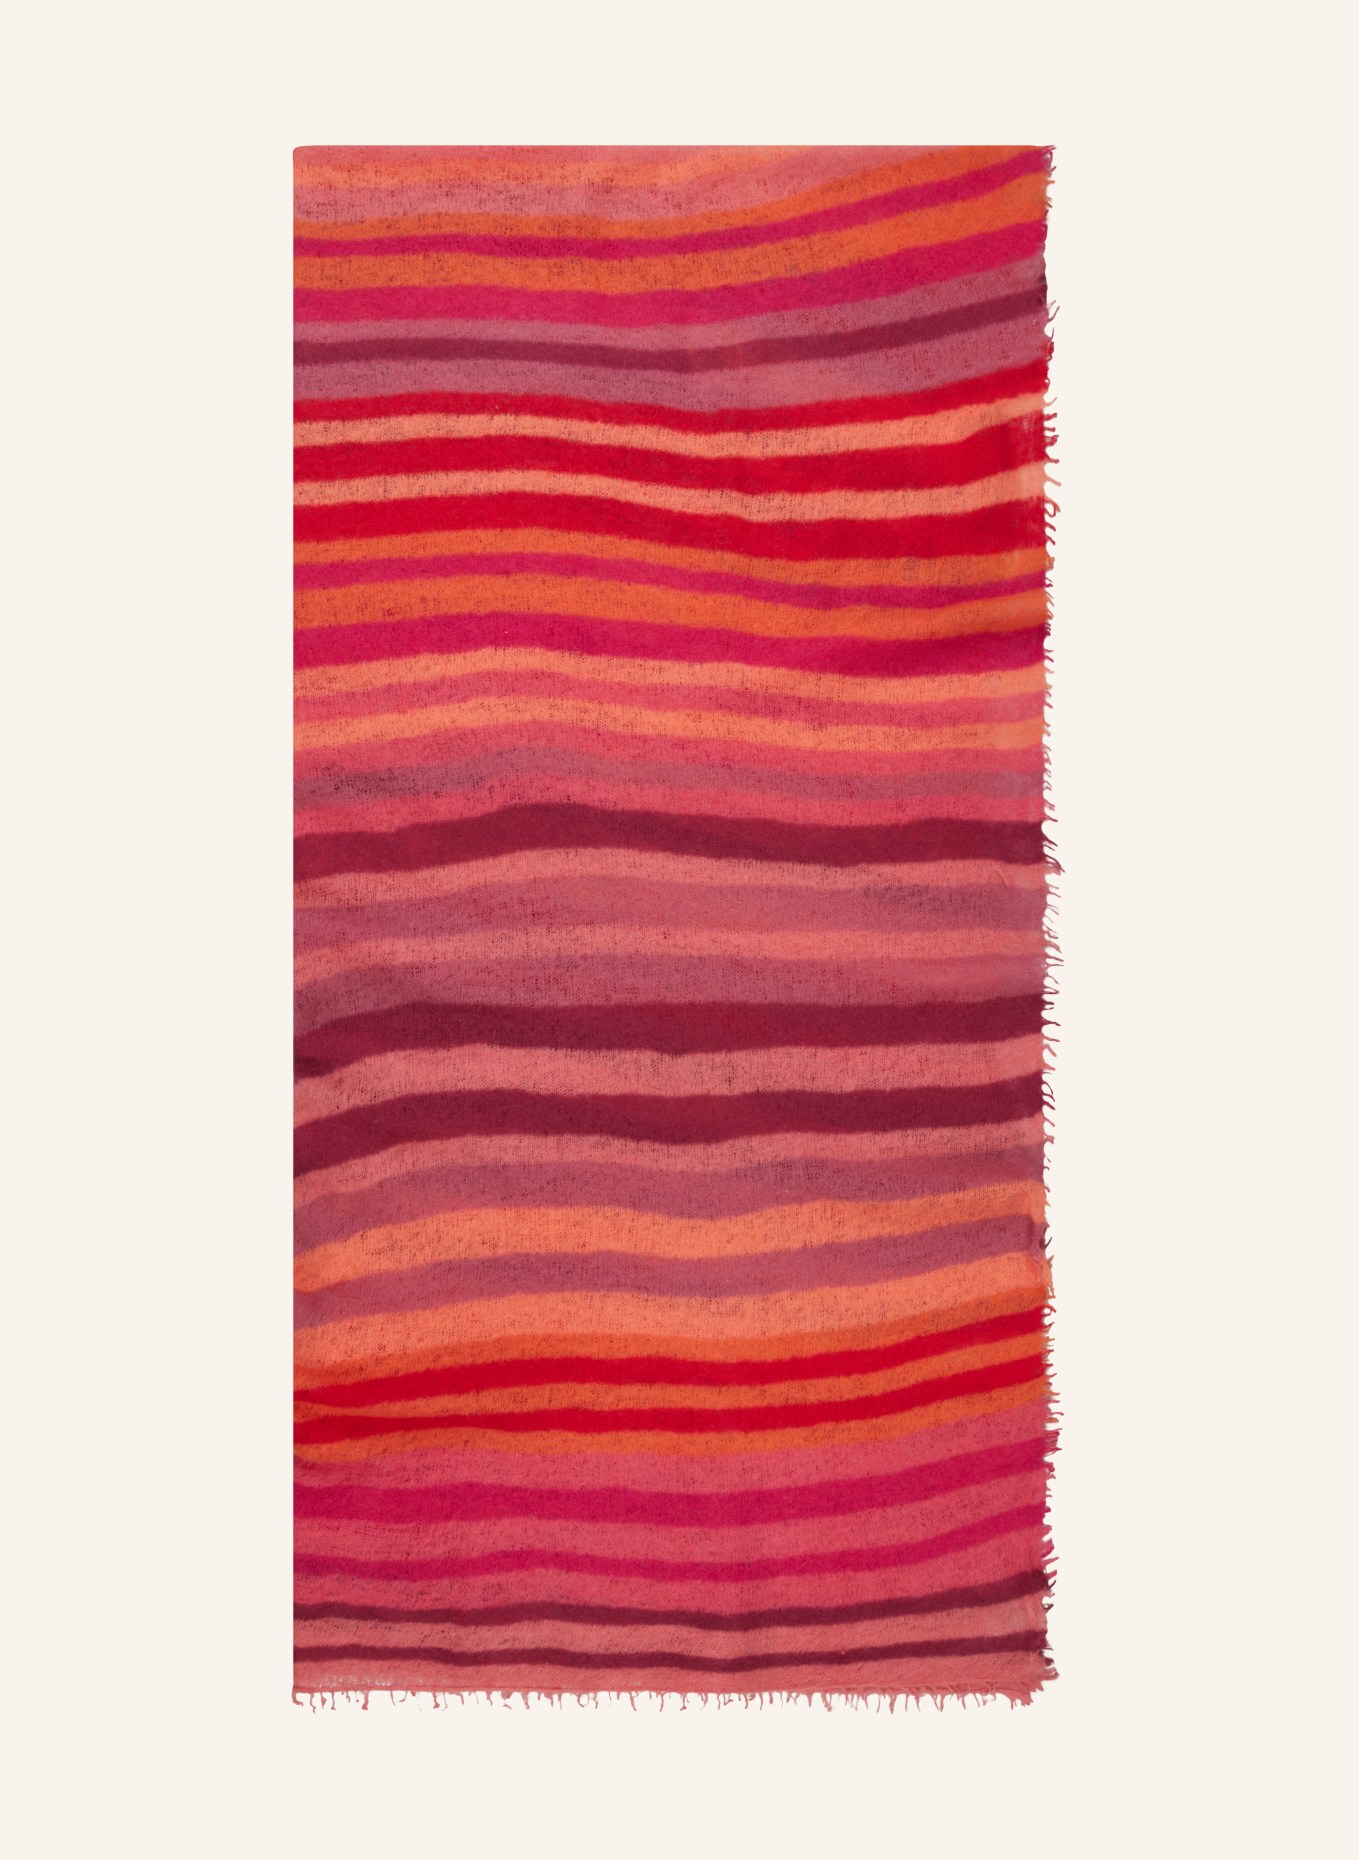 PURSCHOEN Cashmere-Schal RAINBOW, Farbe: 6648 red dream (Bild 1)